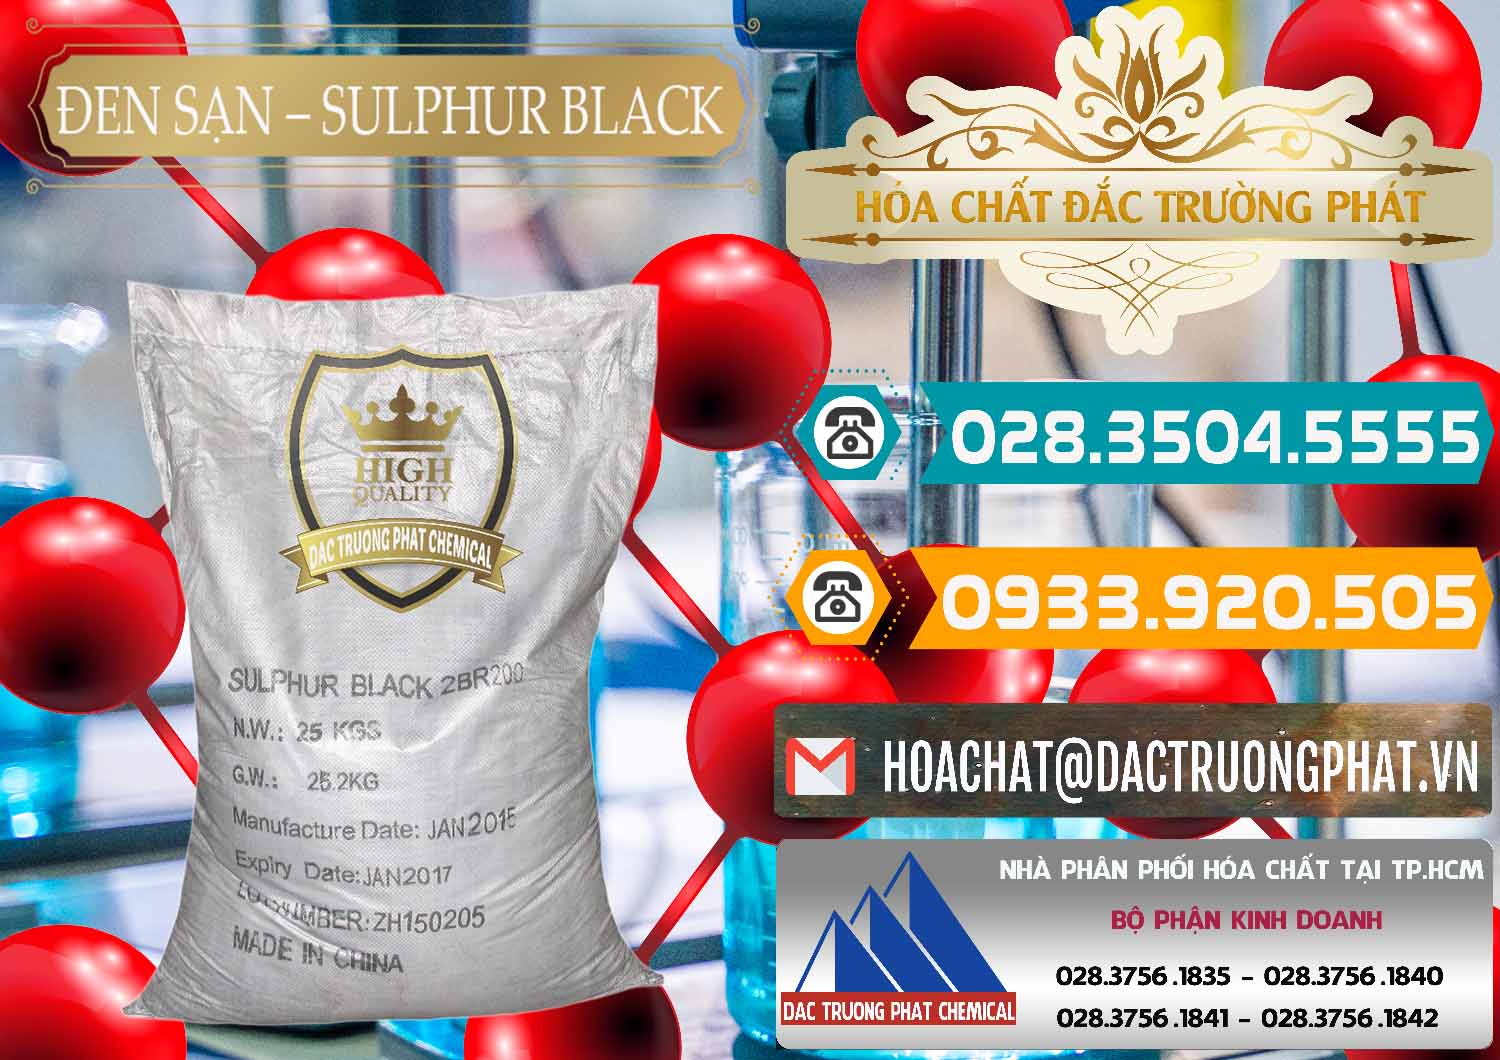 Nơi chuyên cung ứng và bán Đen Sạn – Sulphur Black Trung Quốc China - 0062 - Nơi phân phối ( cung cấp ) hóa chất tại TP.HCM - congtyhoachat.vn